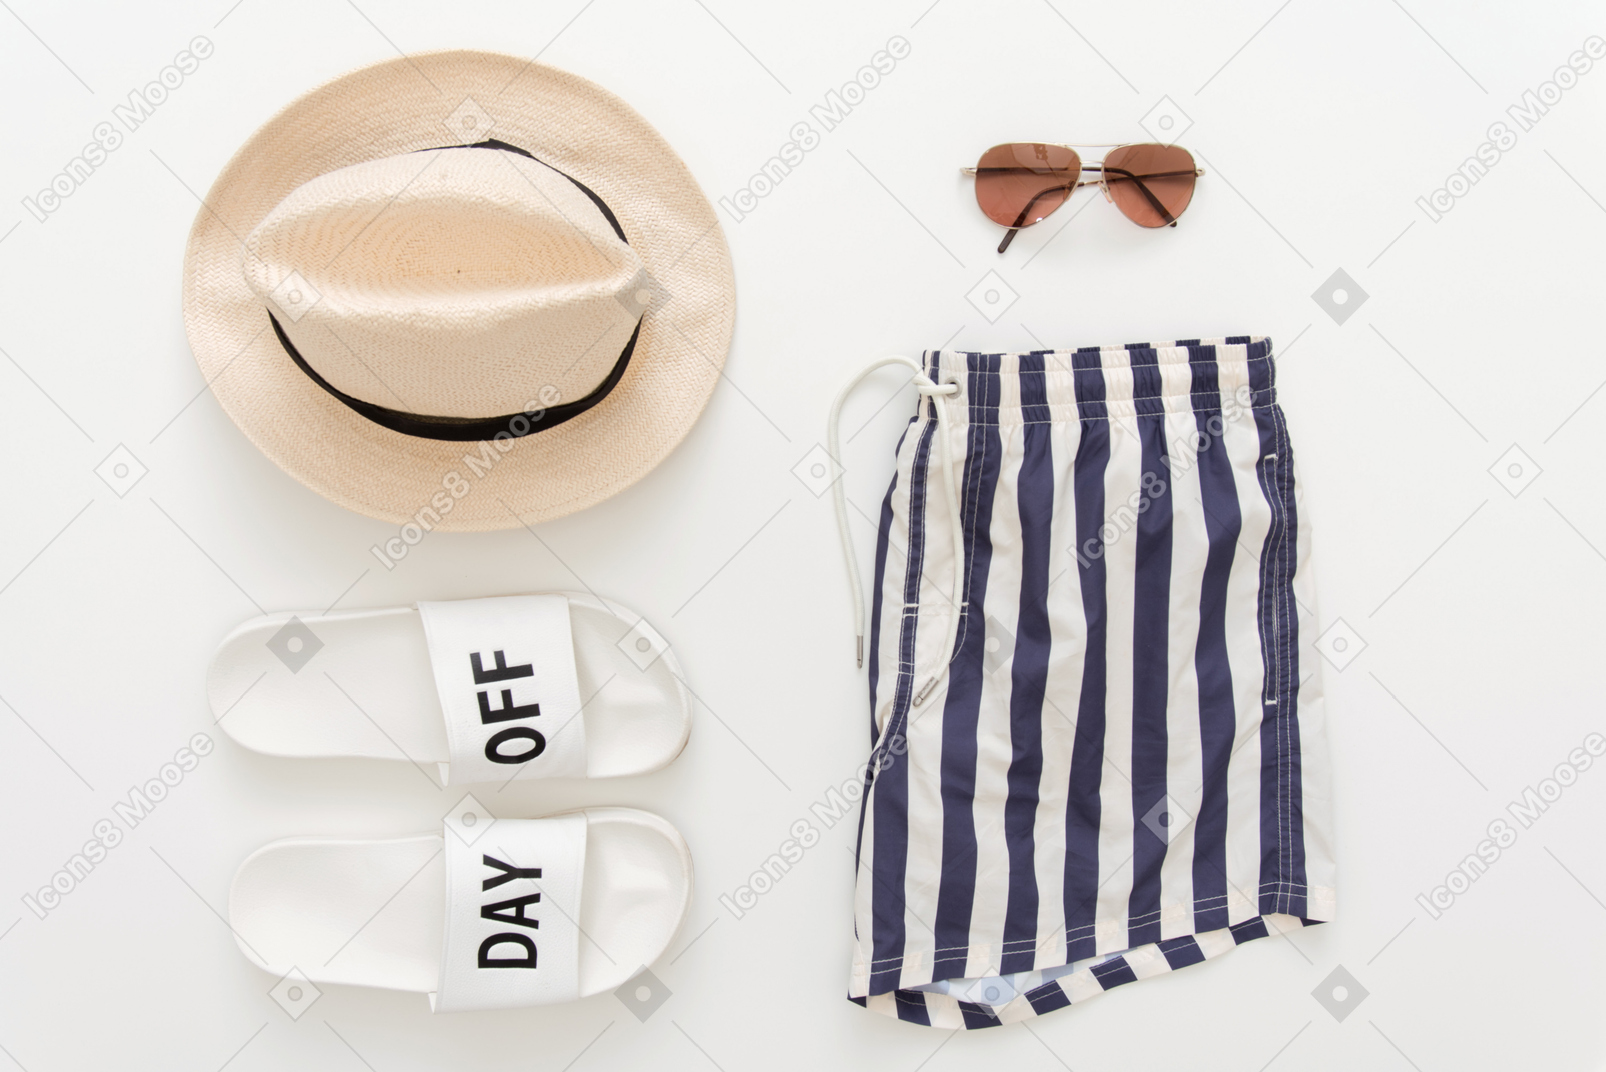 Pantaloncini da bagno, ciabatte da spiaggia, cappello e occhiali da sole